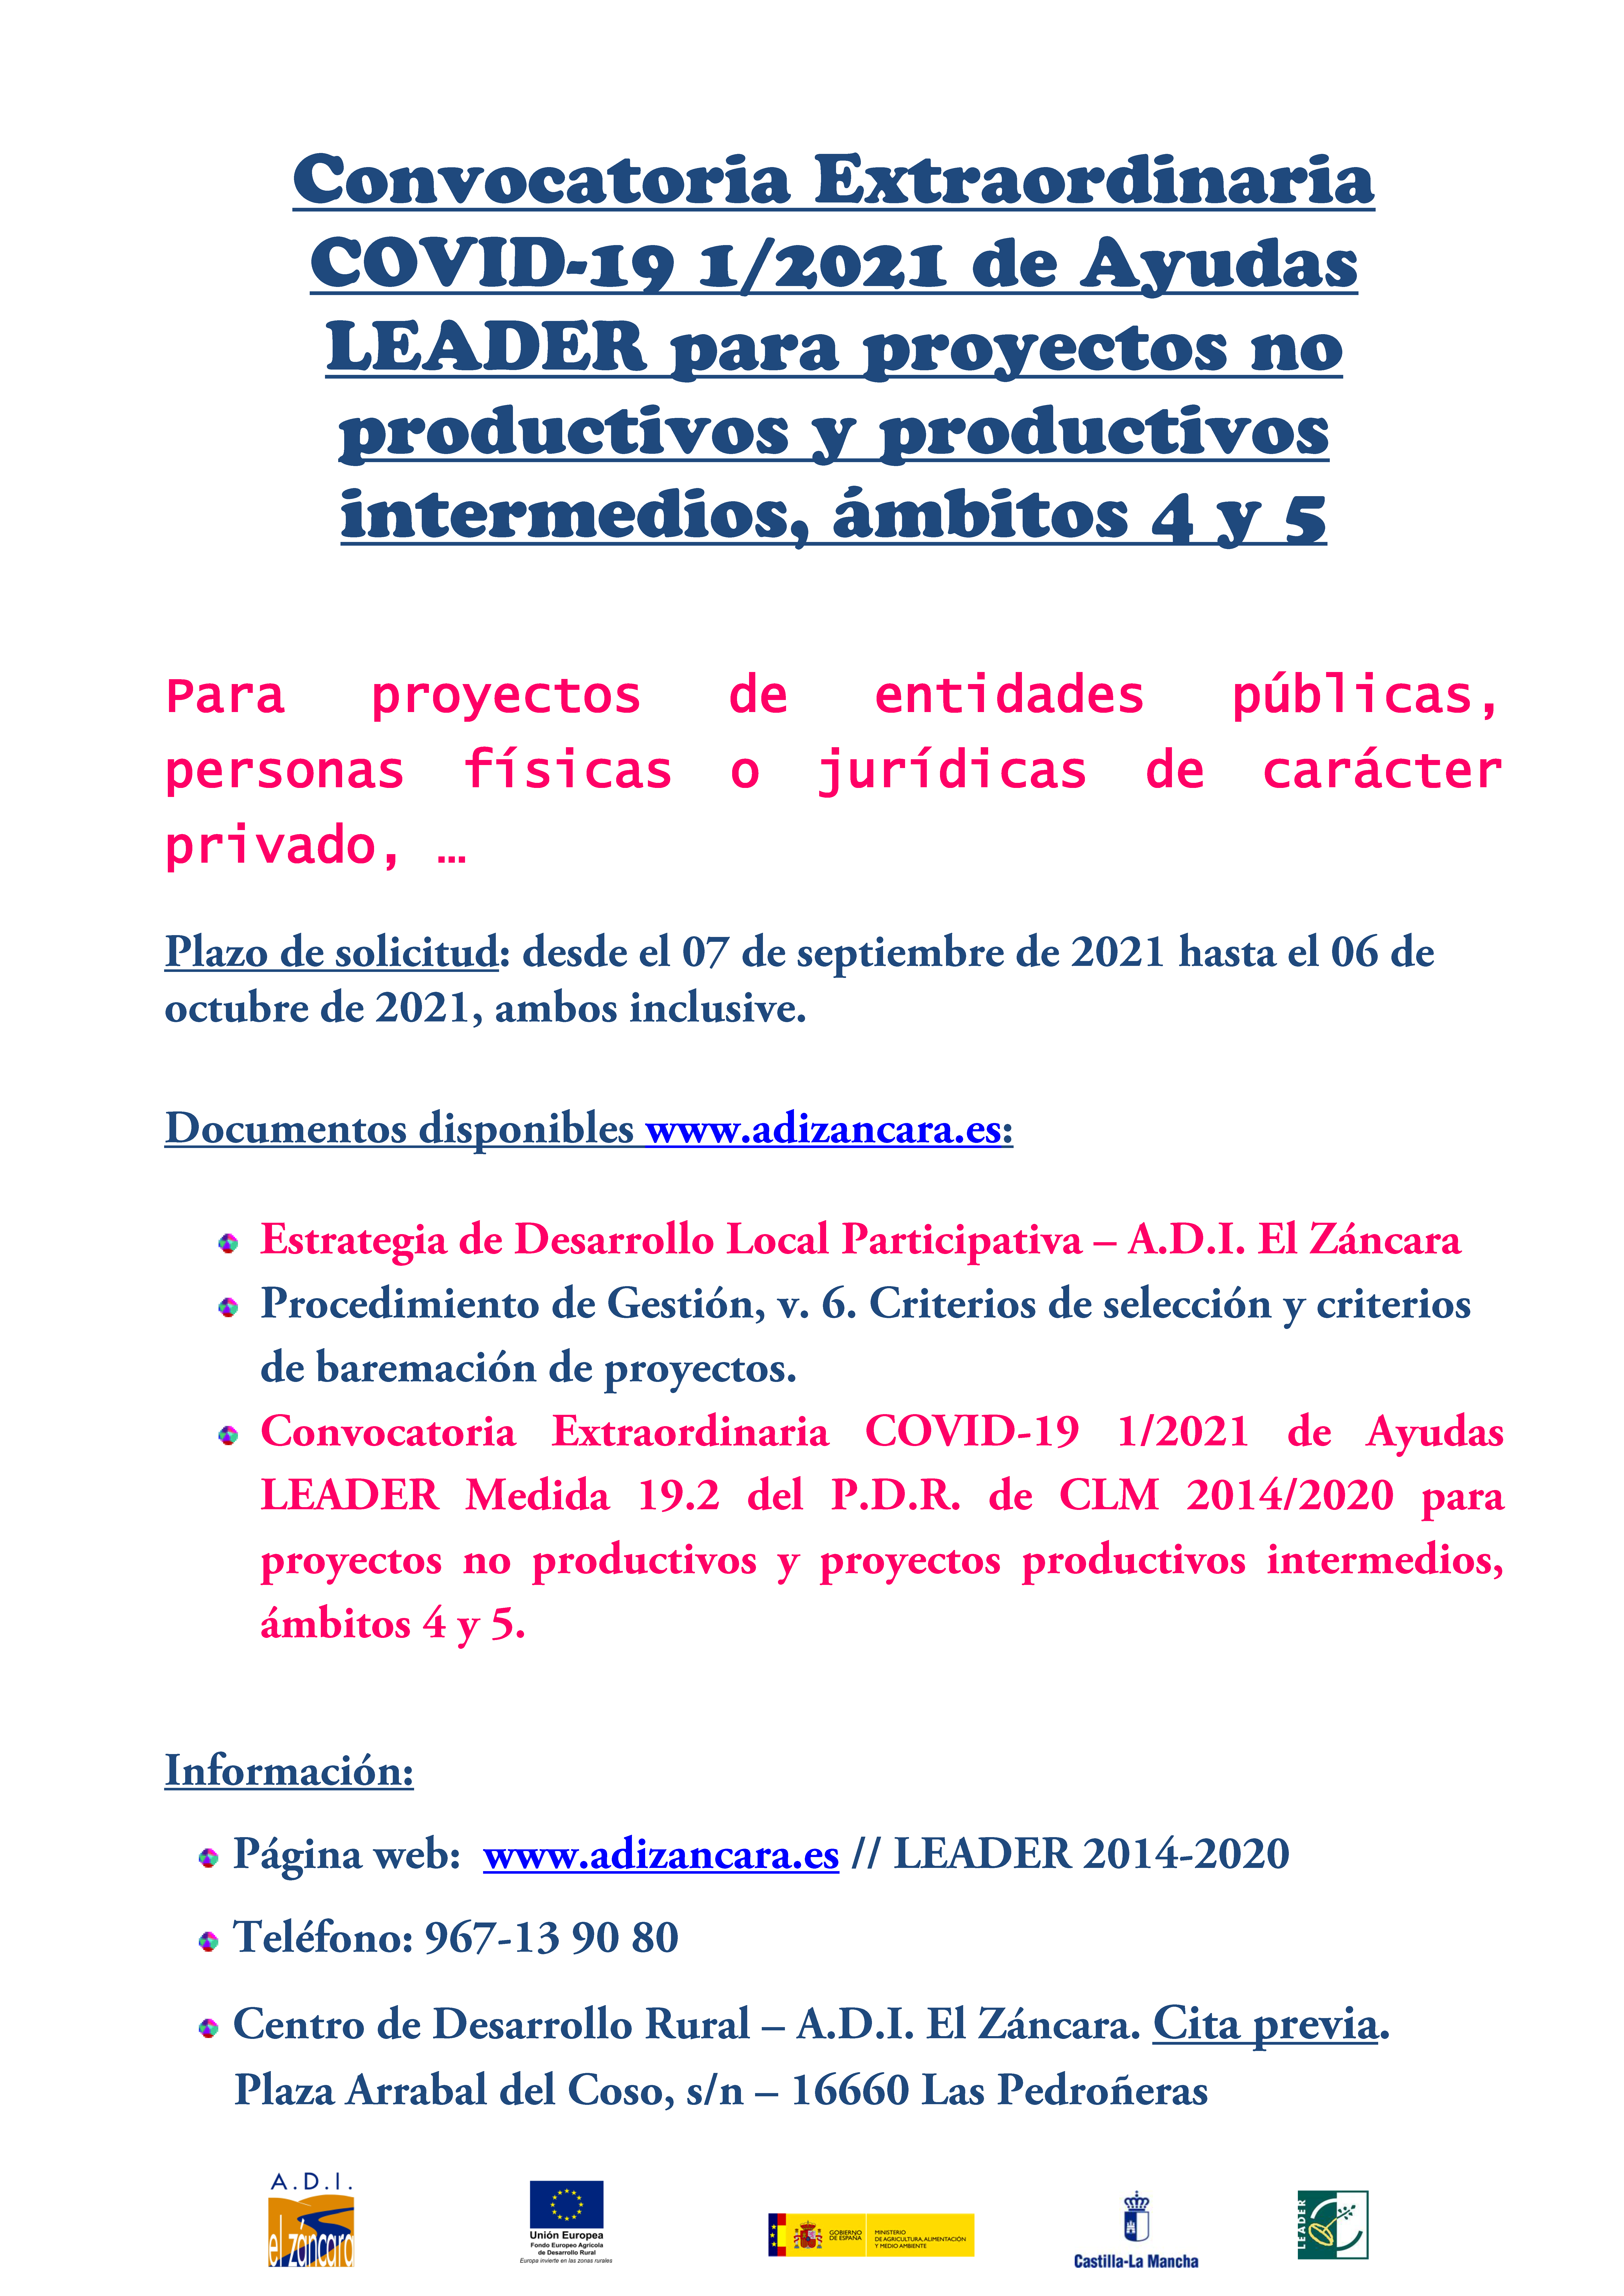 Cartel_publicidad_Convocatoria_1-2021_COVID-19.png